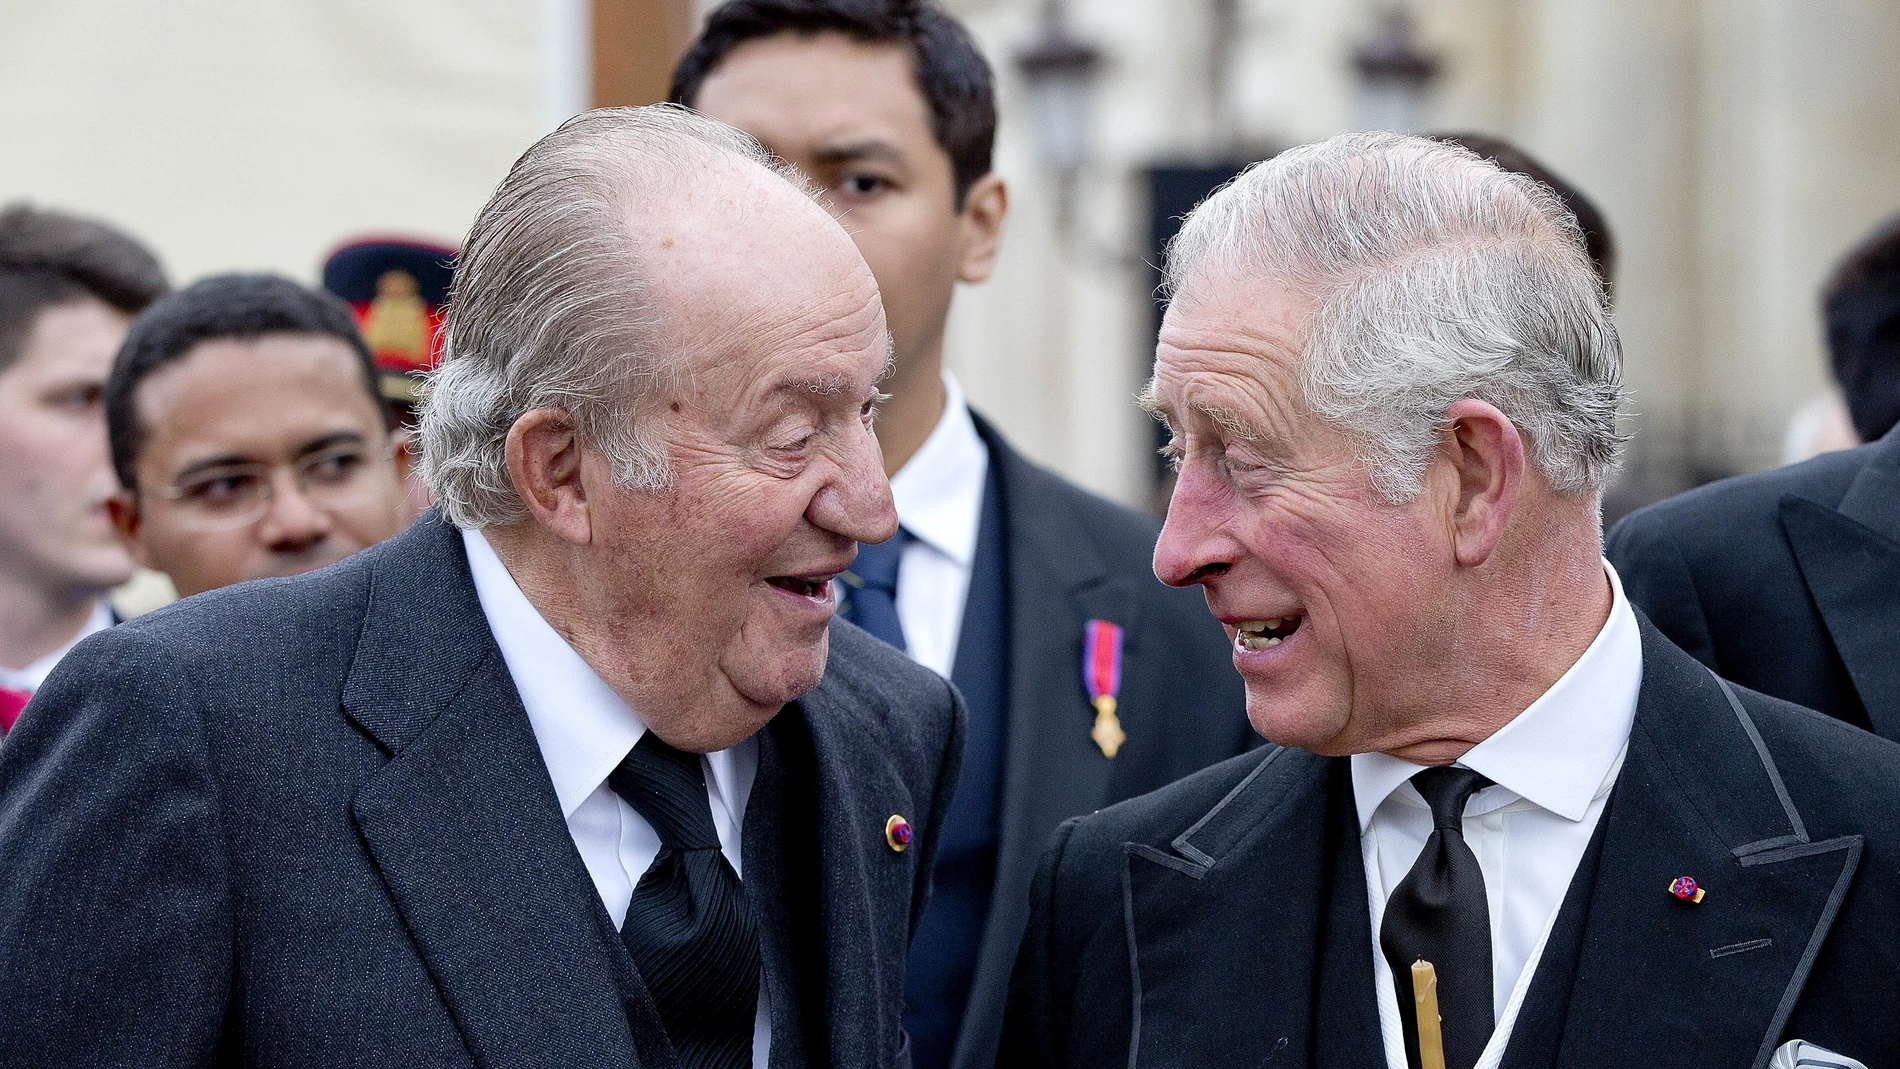 El Rey Juan Carlos I y el Rey Carlos III en una imagen de archivo